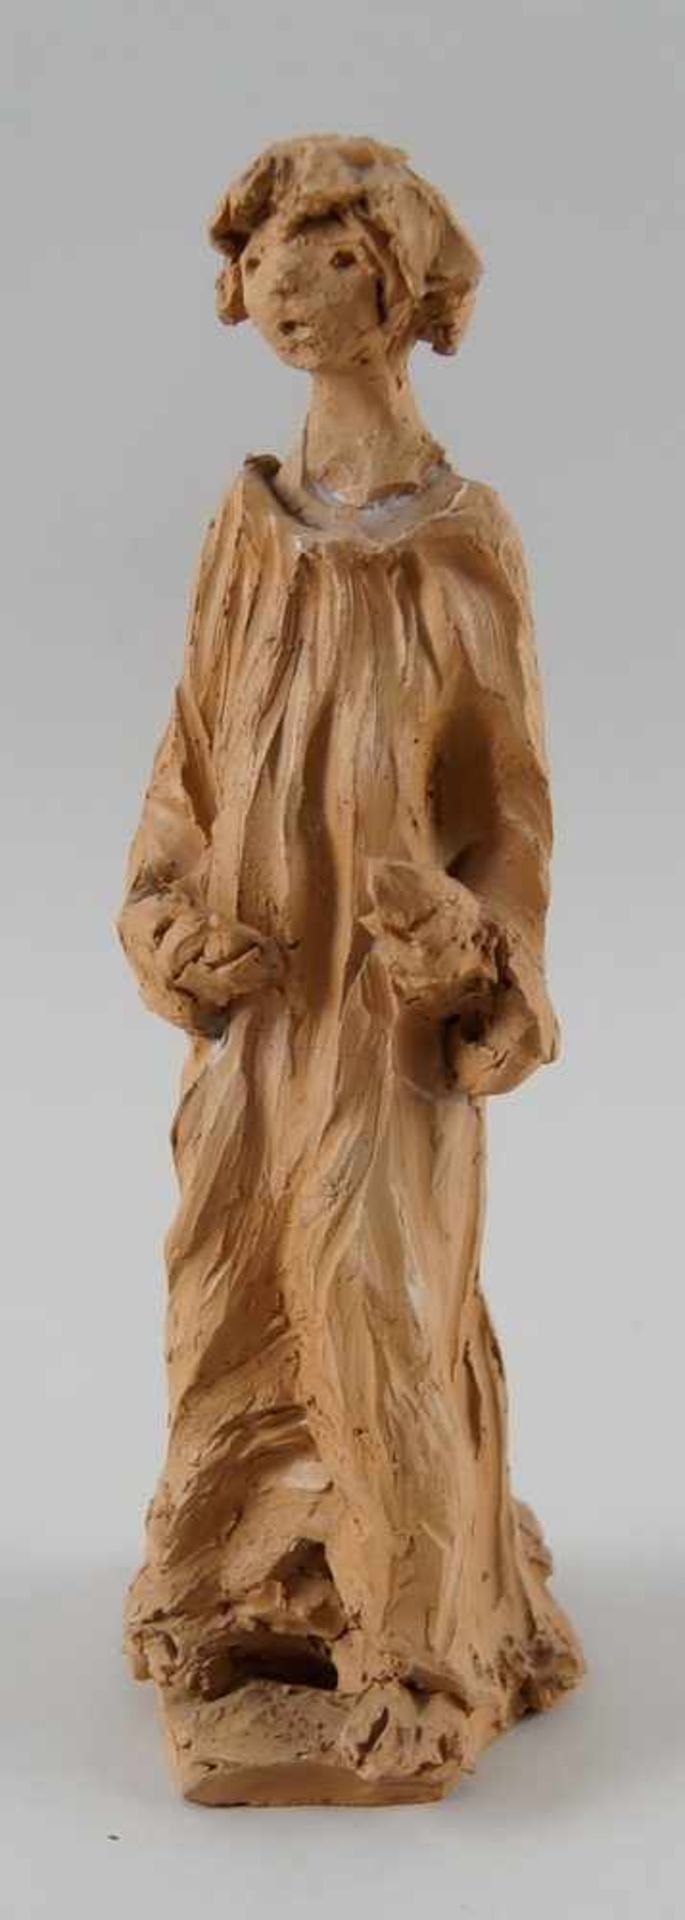 Francesco Messino Skulptur aus Ton, besch., H 25 cm- - -24.00 % buyer's premium on the hammer - Bild 2 aus 7